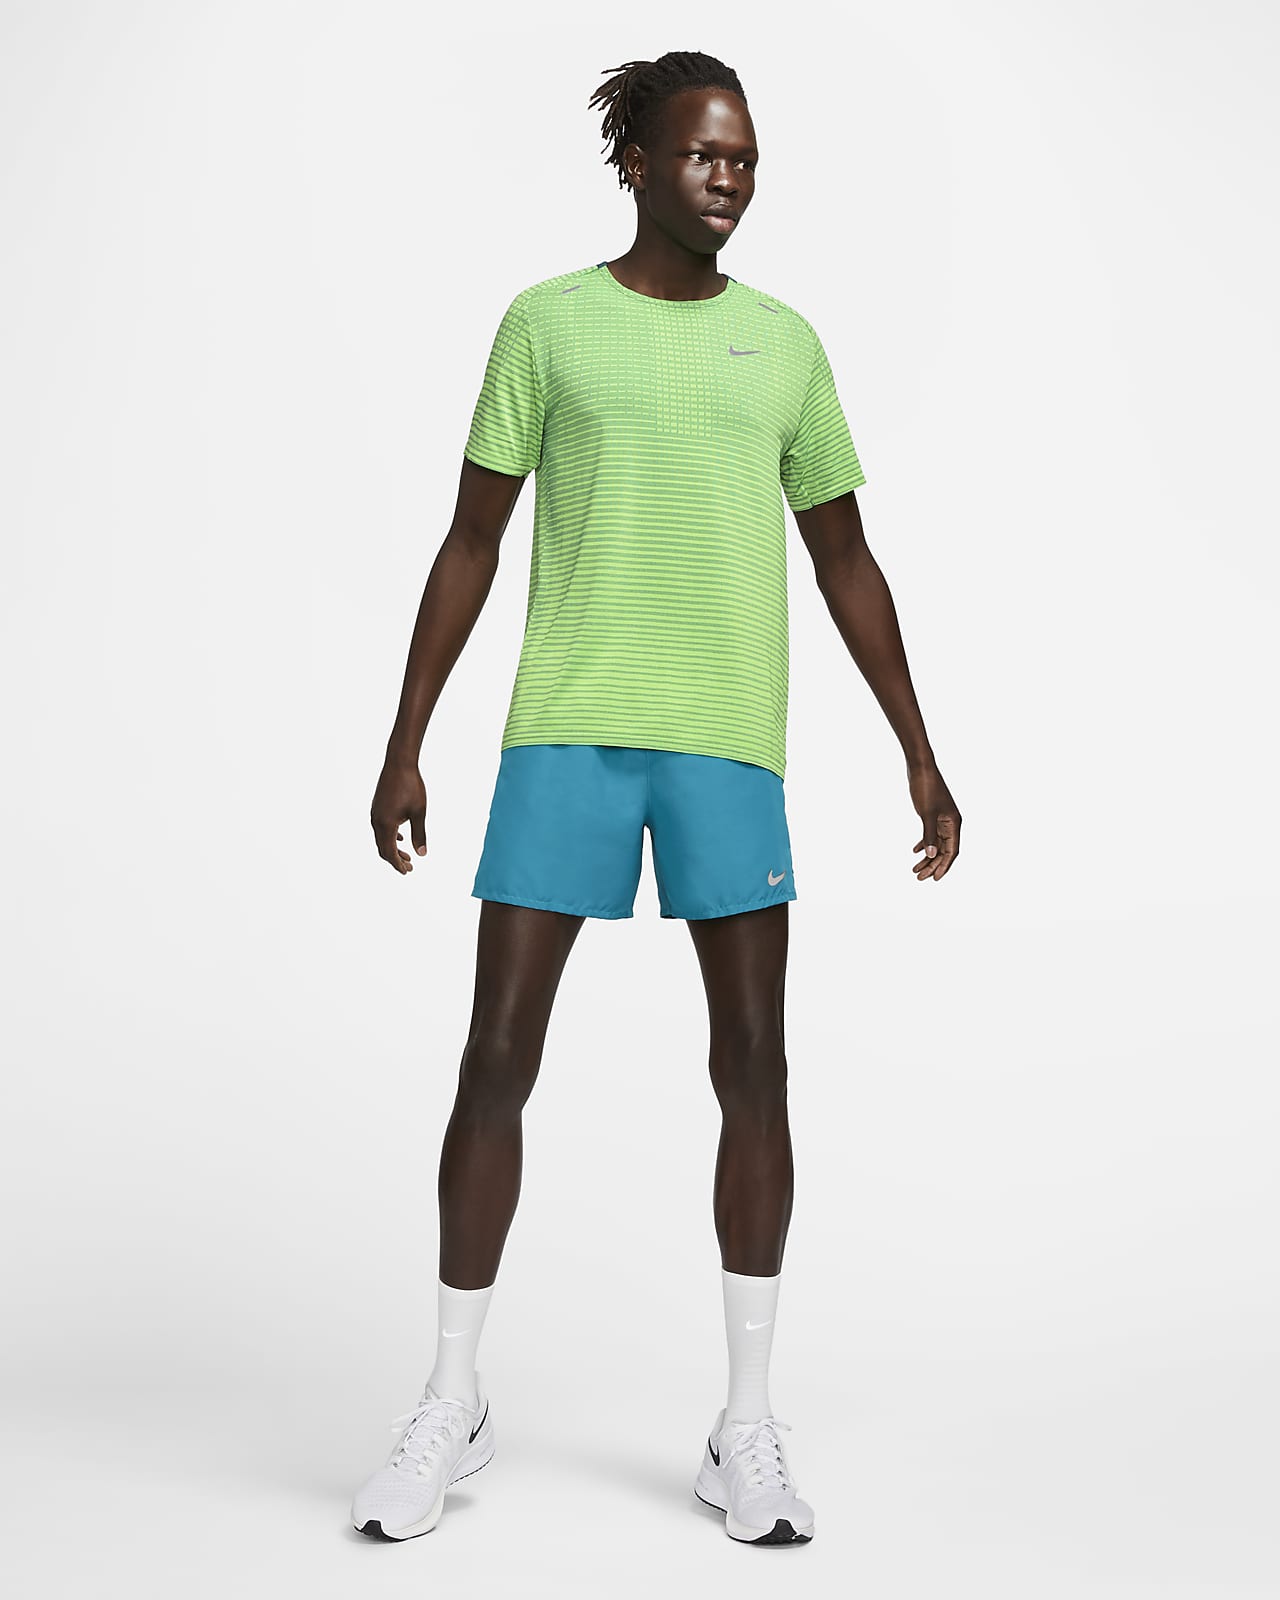 Nike TechKnit Ultra Men's Running Top. Nike SK